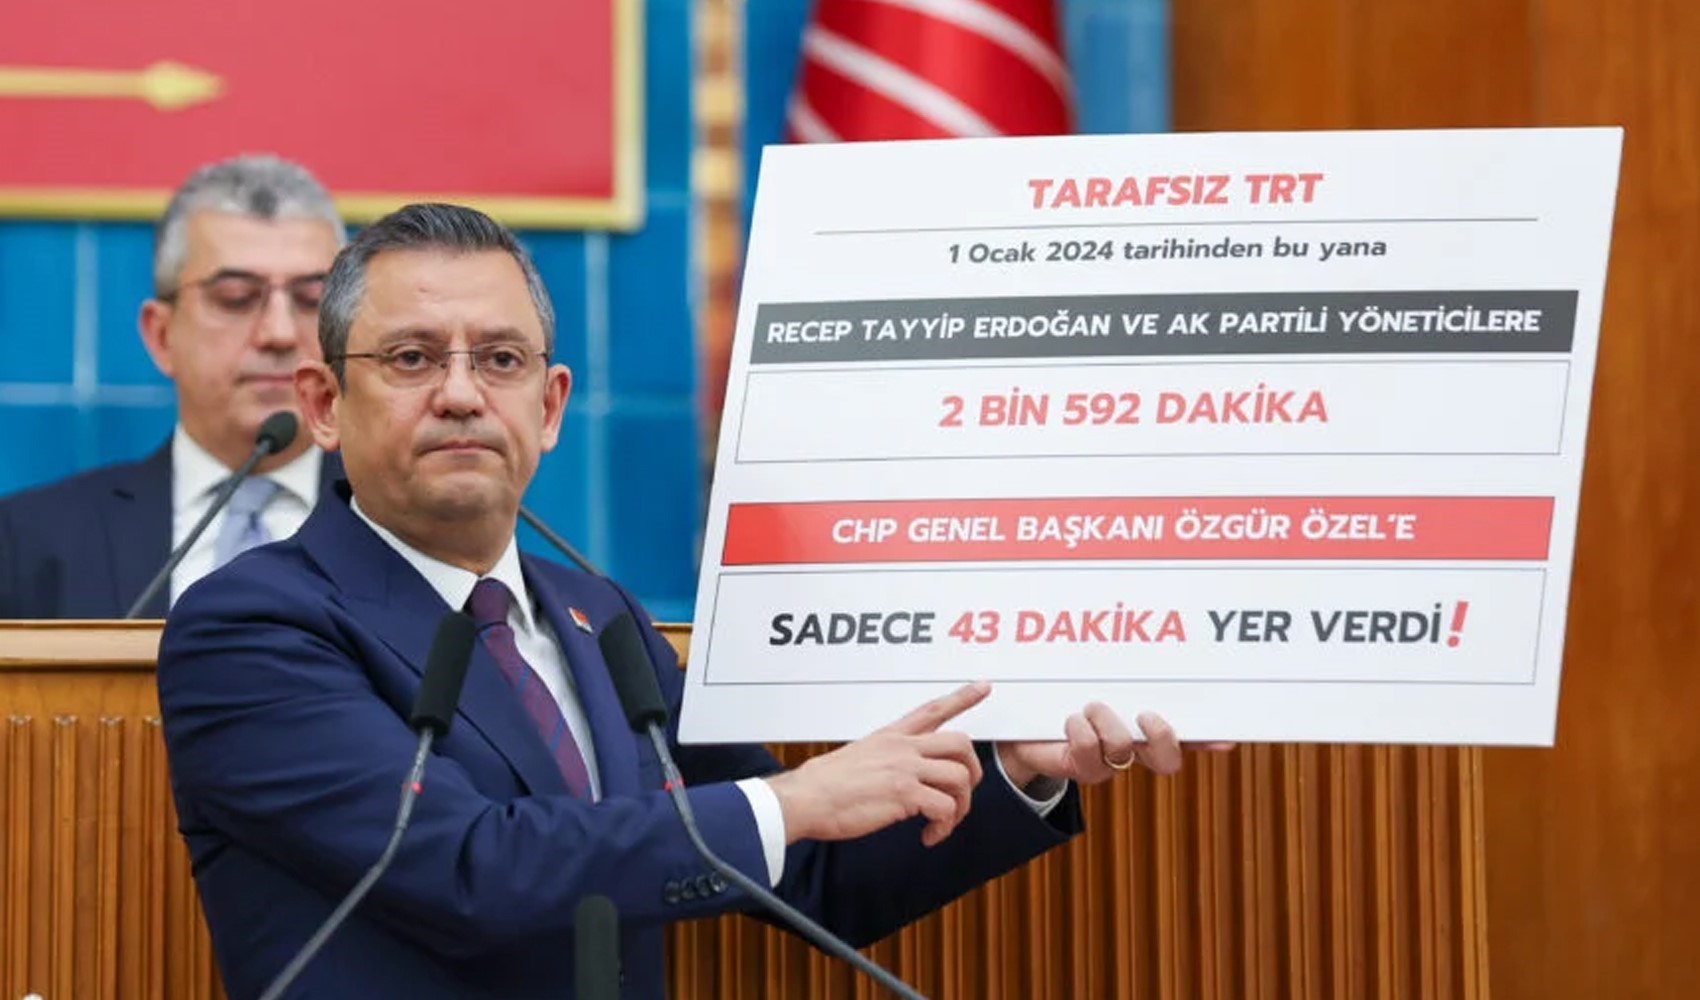 TRT Genel Müdürü ile görüşen CHP heyetinden açıklama! 'Yayın saatlerindeki adaletsizlik' sorusuna ne yanıt verdi?